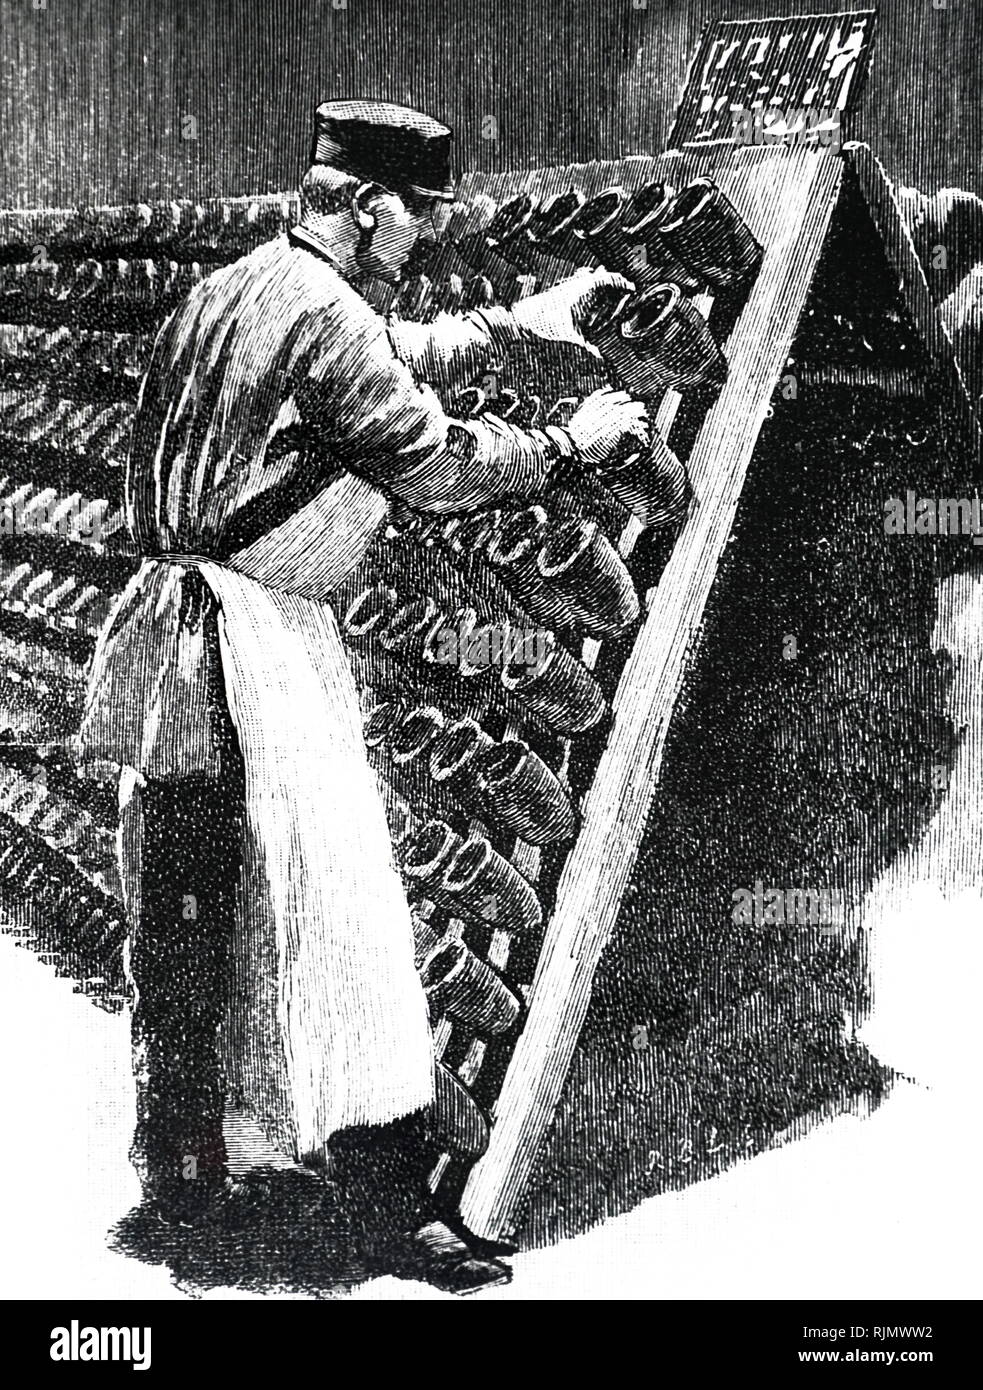 Une gravure illustrant le champagne Pommery & Greno production à Reims, France. Des bouteilles de champagne tourné à la main. 1889 Banque D'Images